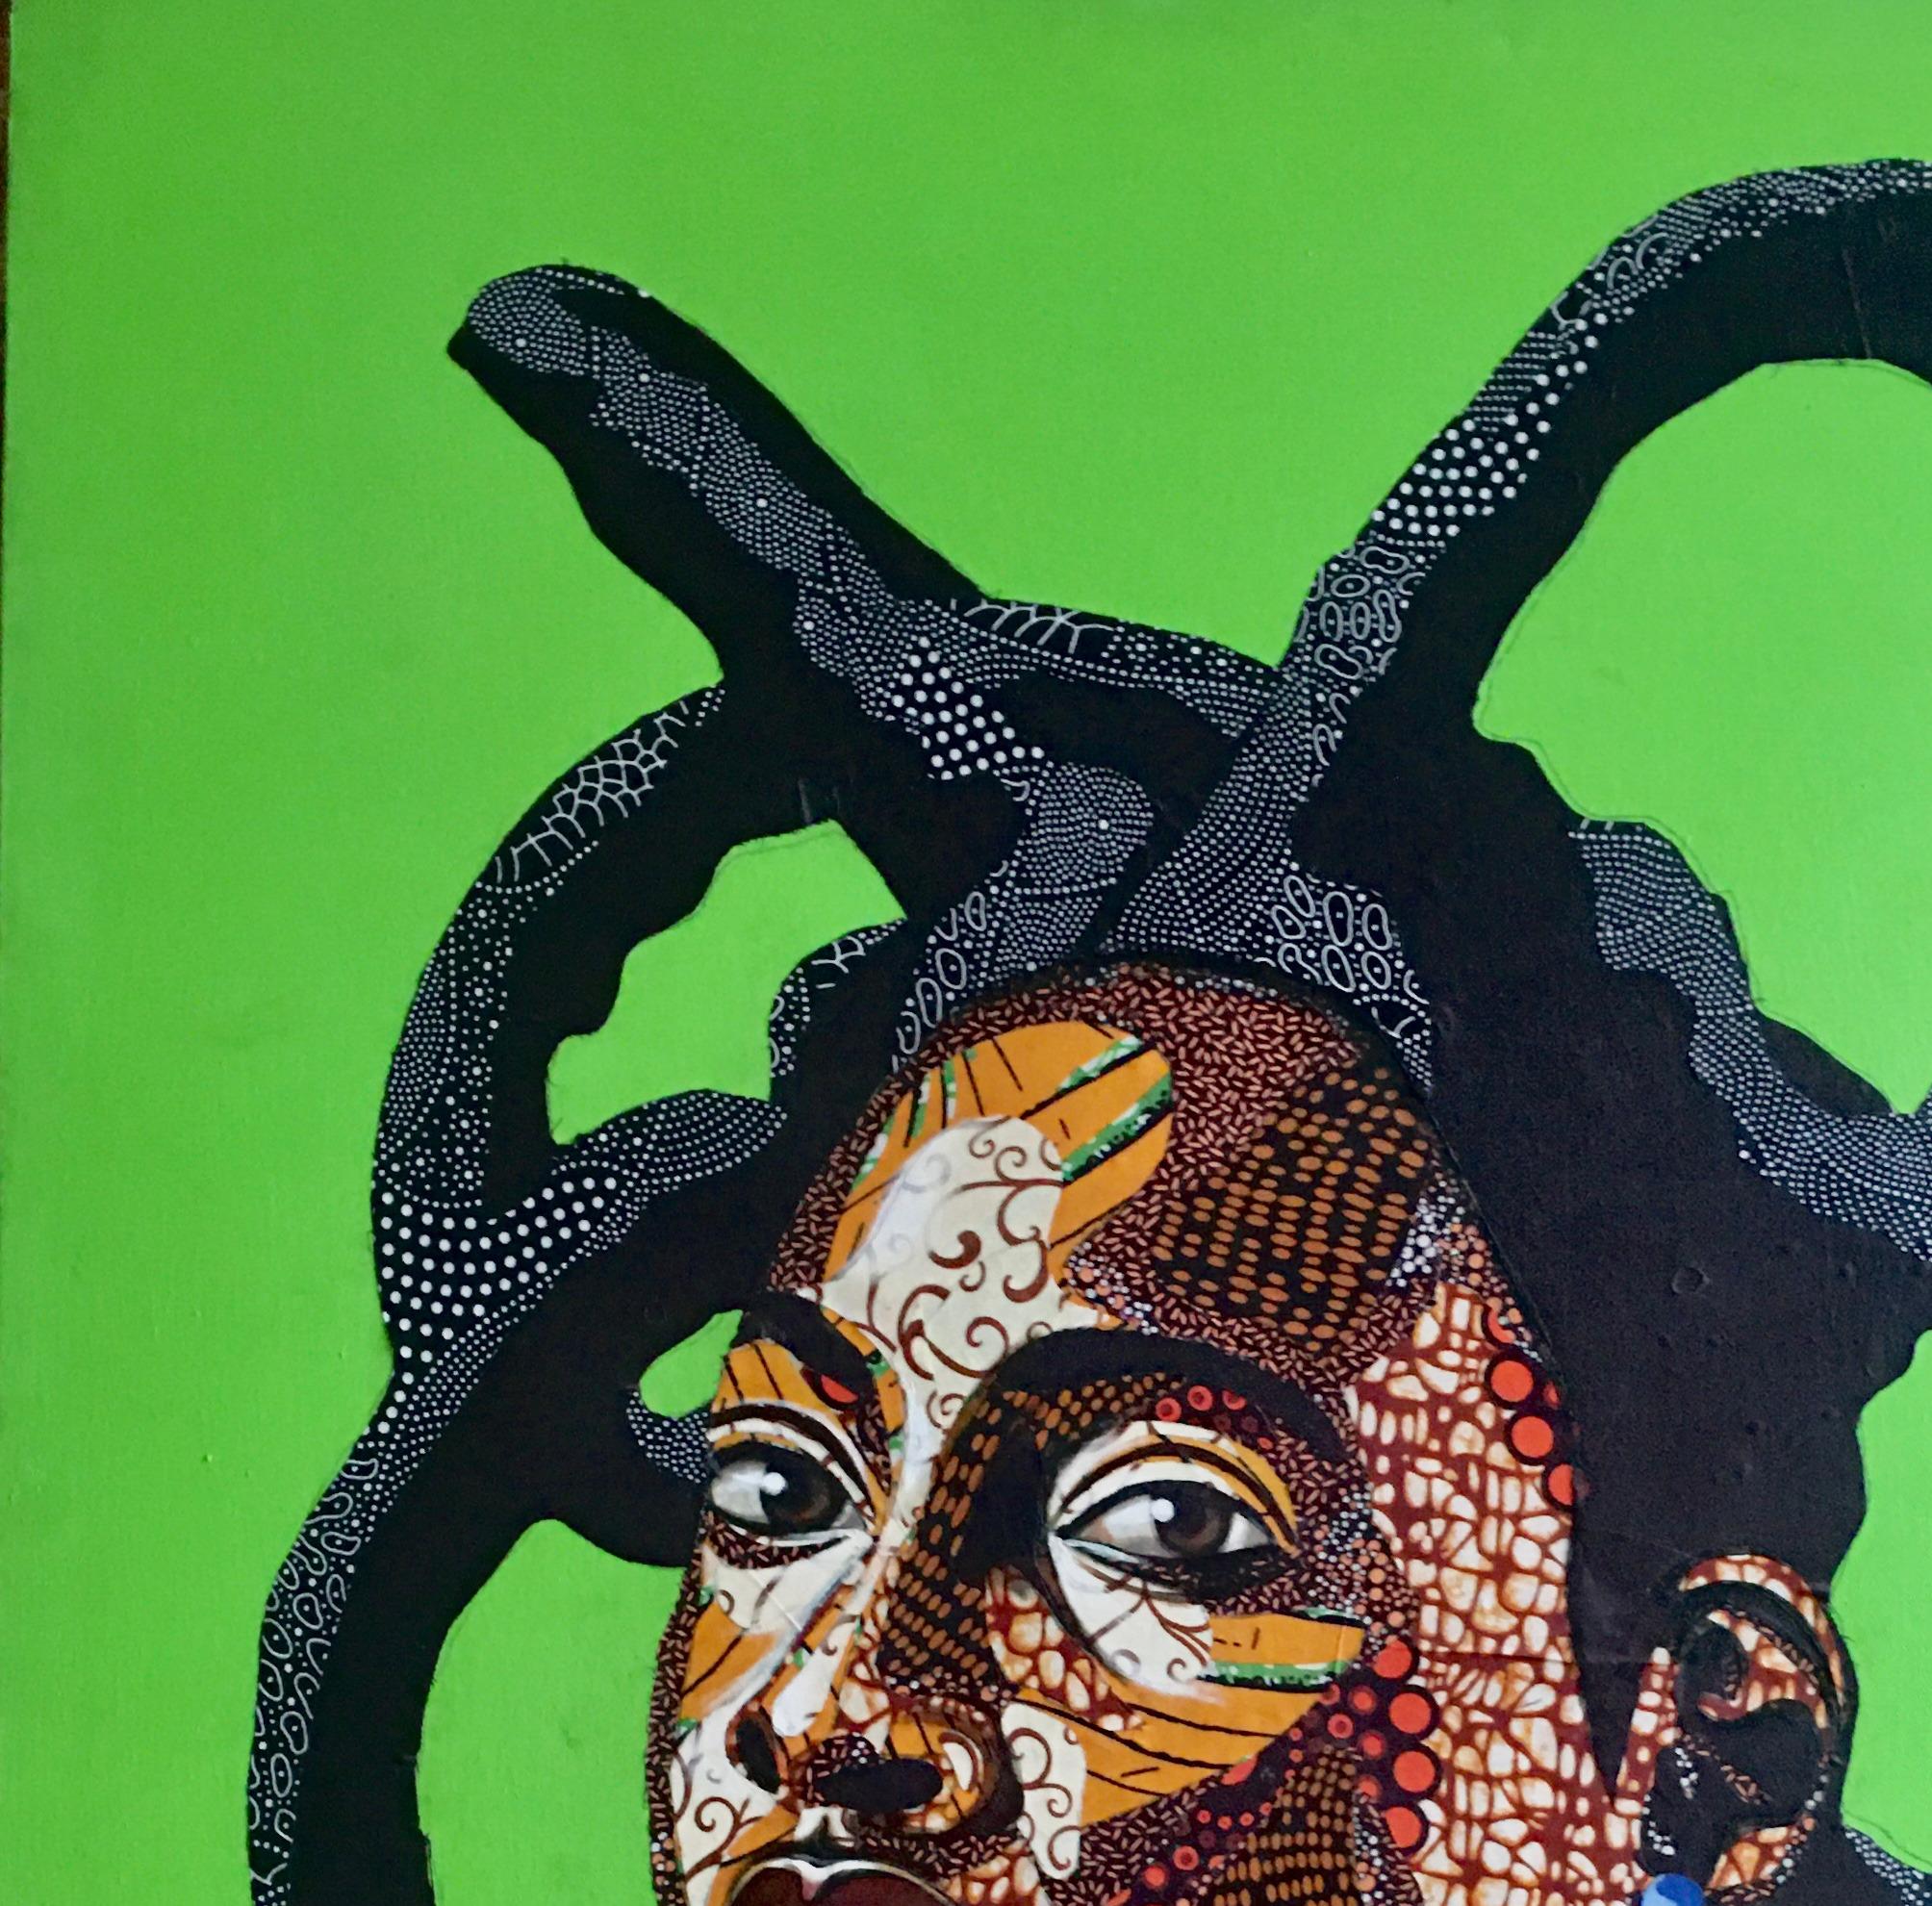 Medusa - Painting by Fatunmbi Anjolaoluwa Grace